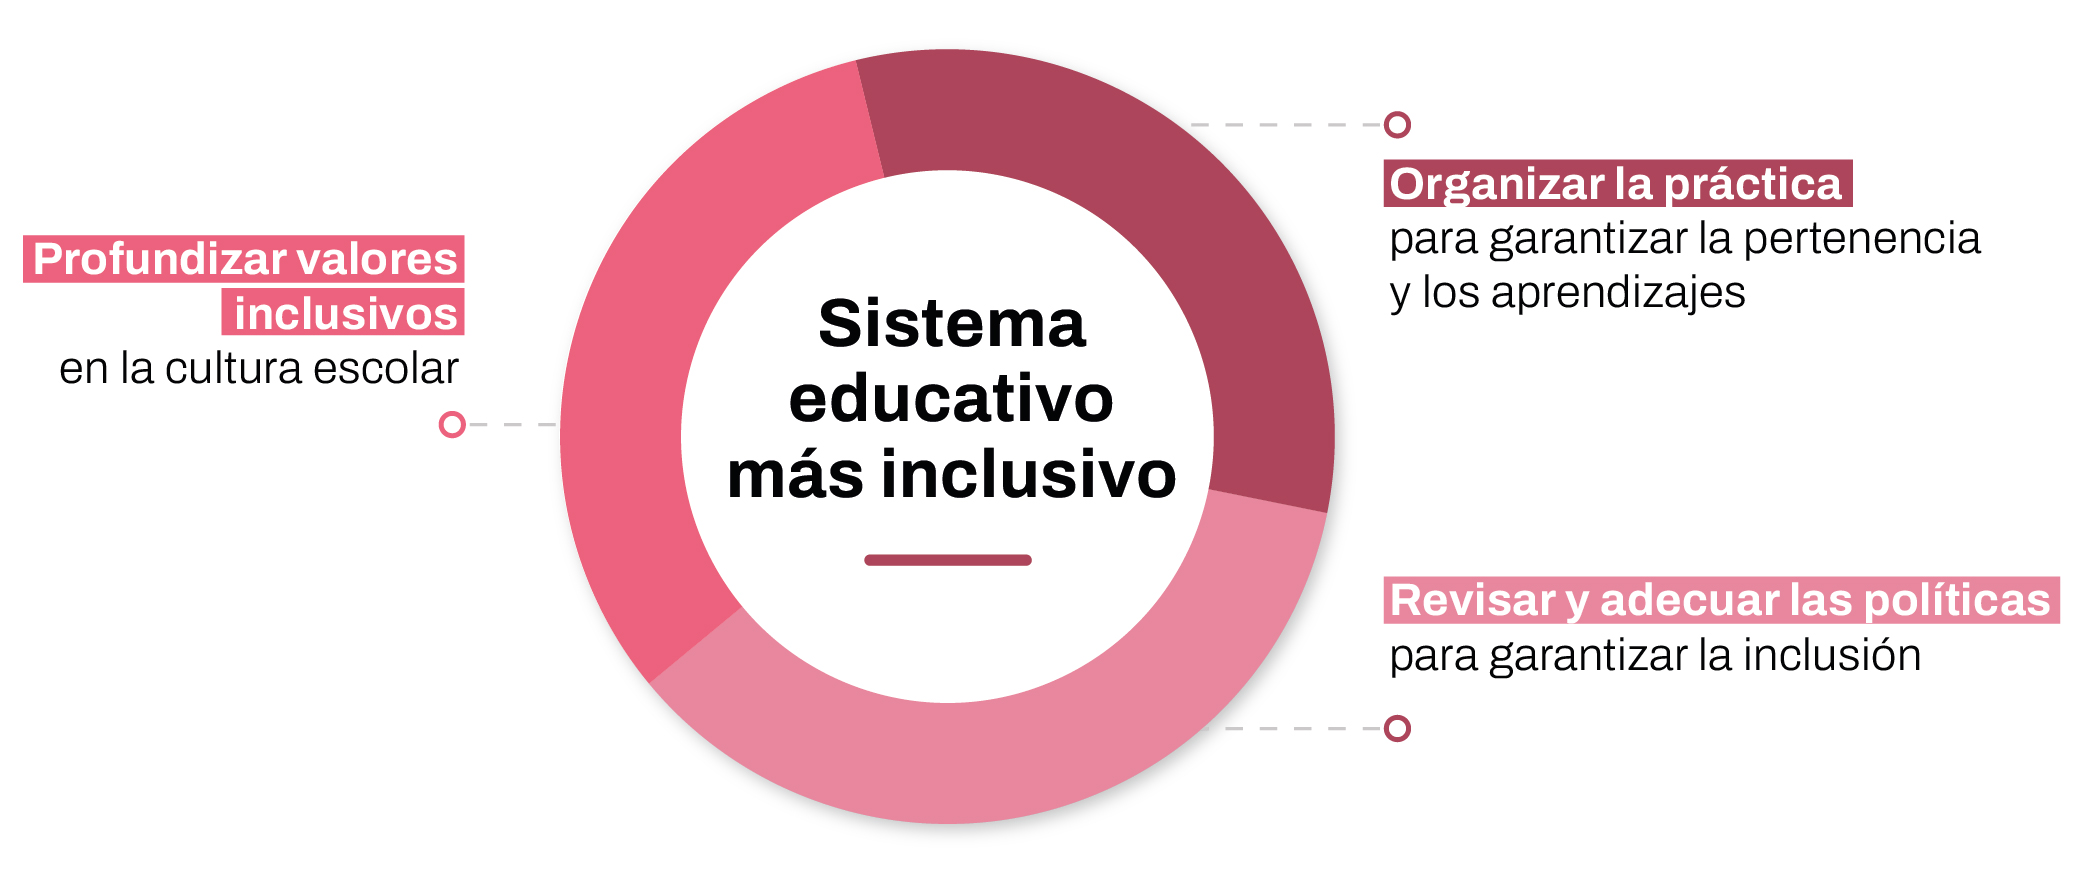 Sistema educativo más inclusivo: profundizar valores inclusivos en la cultura escolar, organizar la práctica para garantizar la pertenencia y los aprendizajes, revisar y adecuar las políticas para garantizar la inclusión